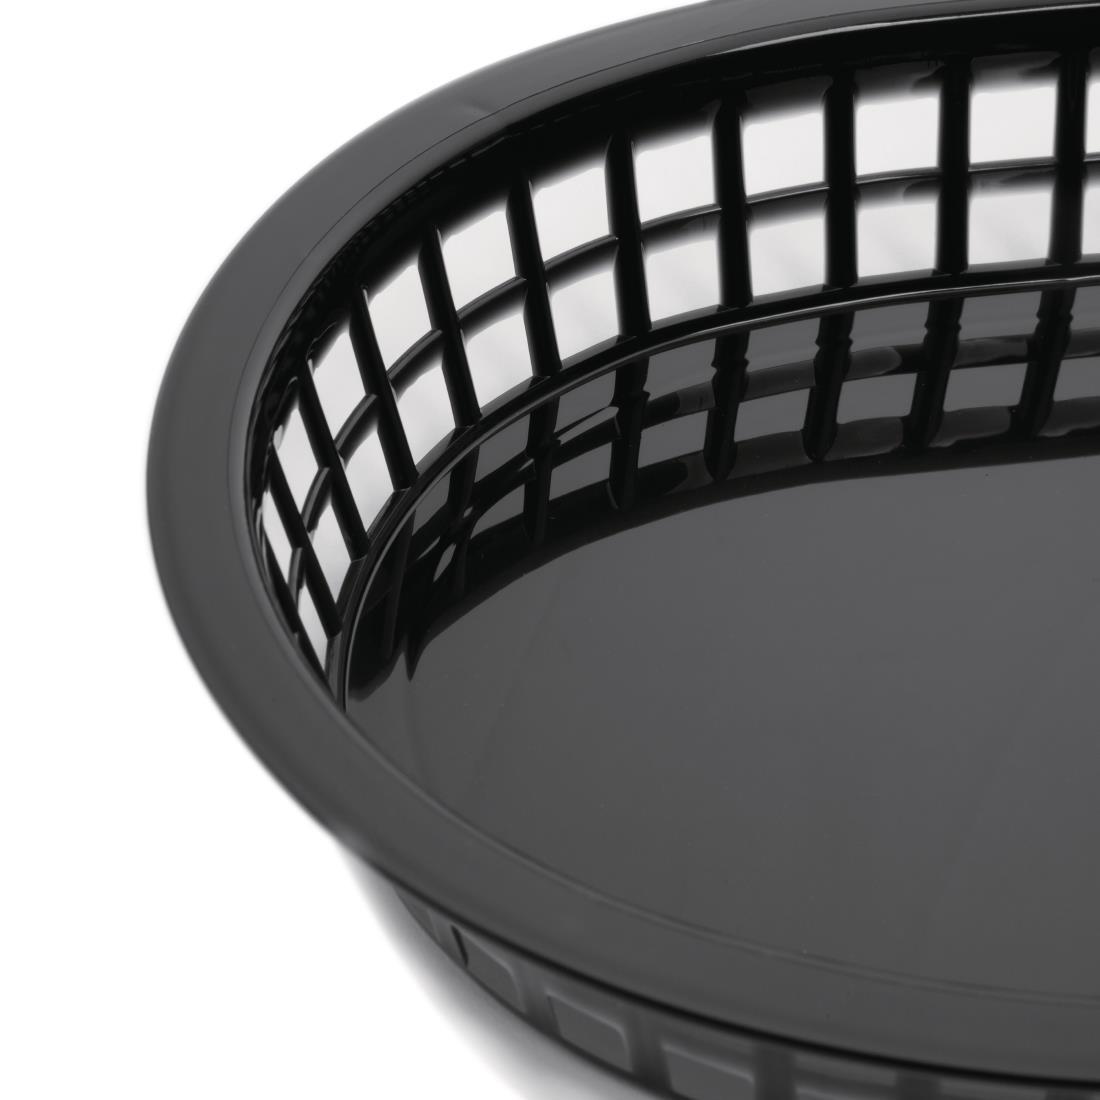 Oval Polypropylene Food Basket Black (Pack of 6) - GH969  - 2